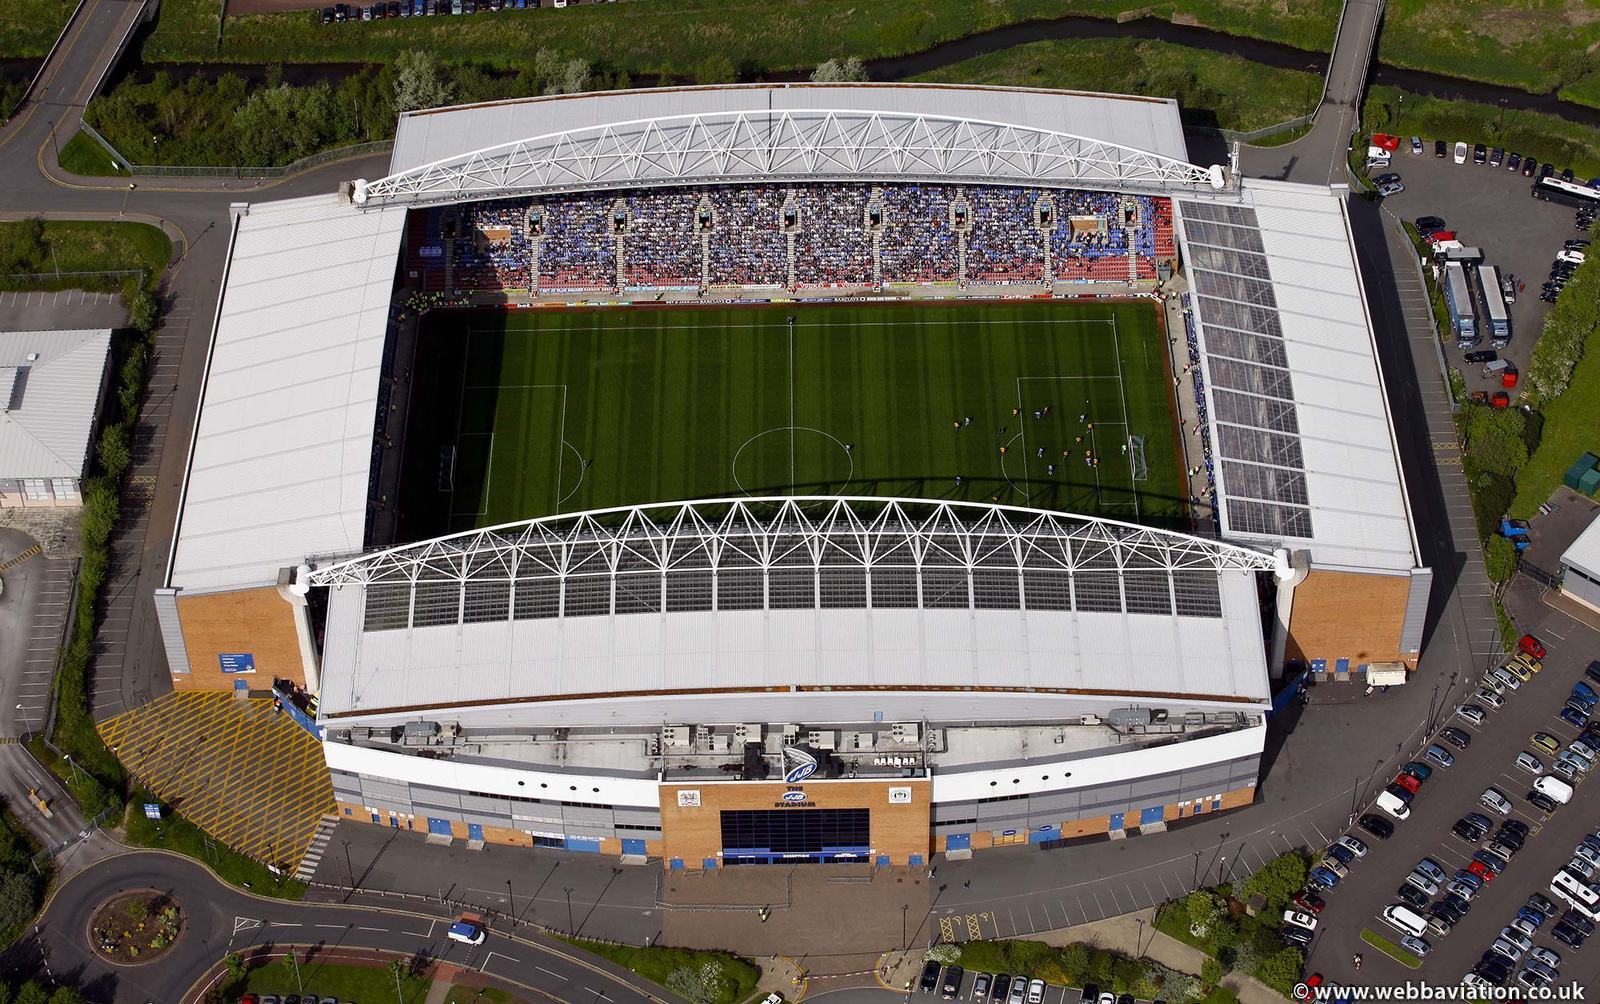  DW Stadium Wigan, aka JJB stadium  from the air  